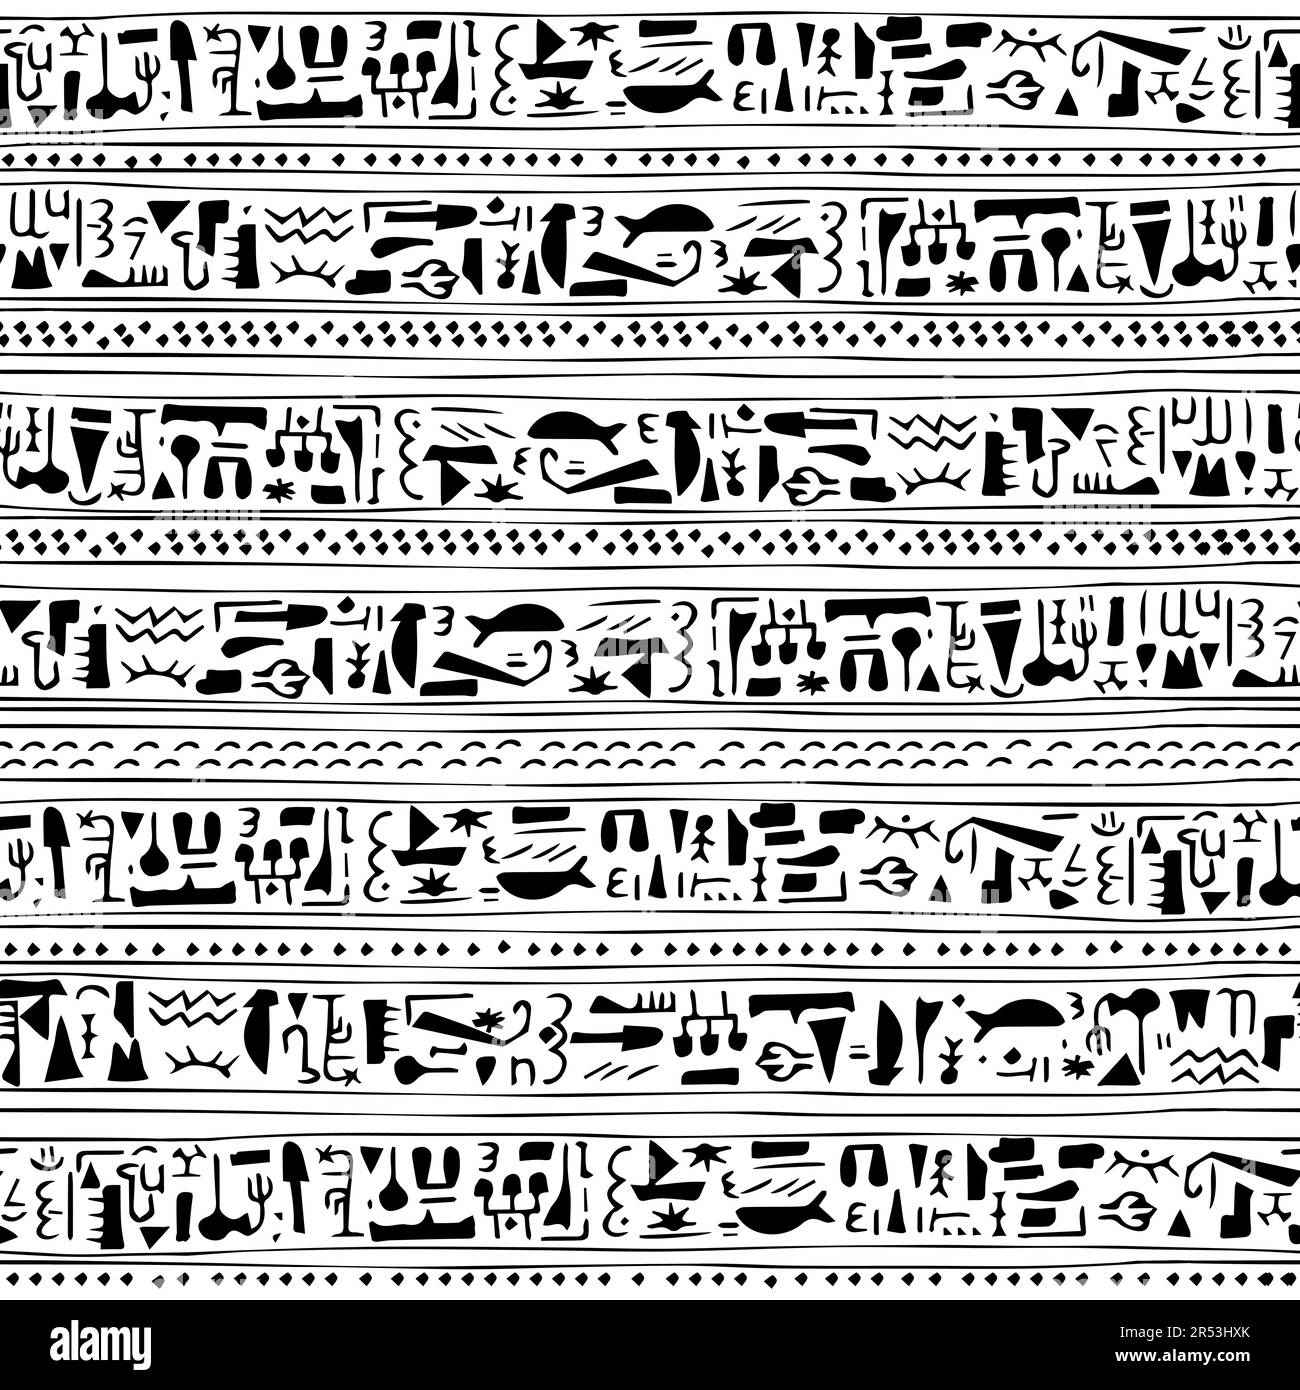 Fesselnde Vektorgrafiken mit handgezeichneten Symbolen, die ägyptischen Hieroglyphen ähneln, nahtloses Muster für einen Hauch von Geheimnissen und Geschichte Stock Vektor